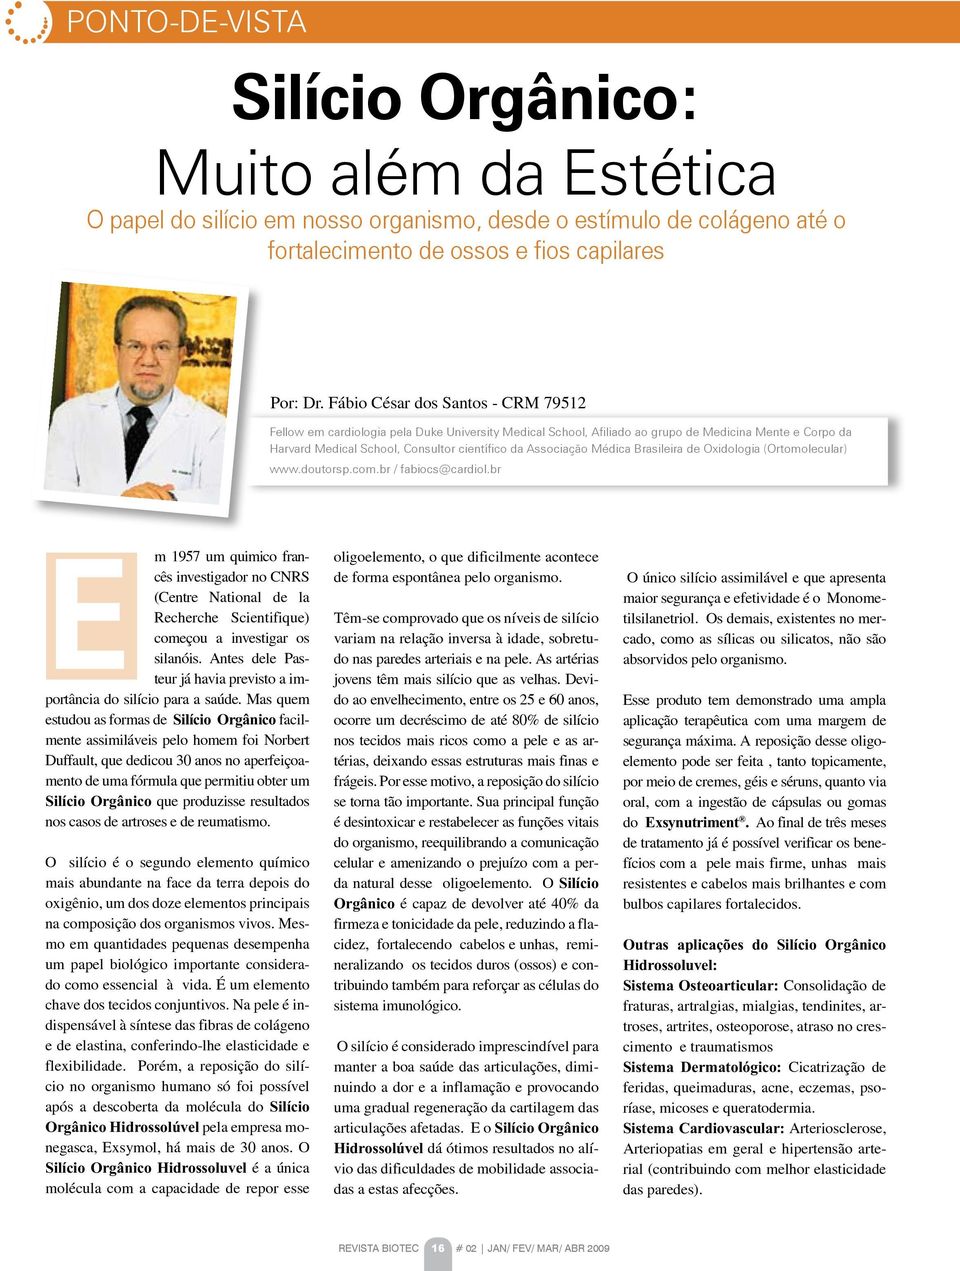 Médica Brasileira de Oxidologia (Ortomolecular) www.doutorsp.com.br / fabiocs@cardiol.